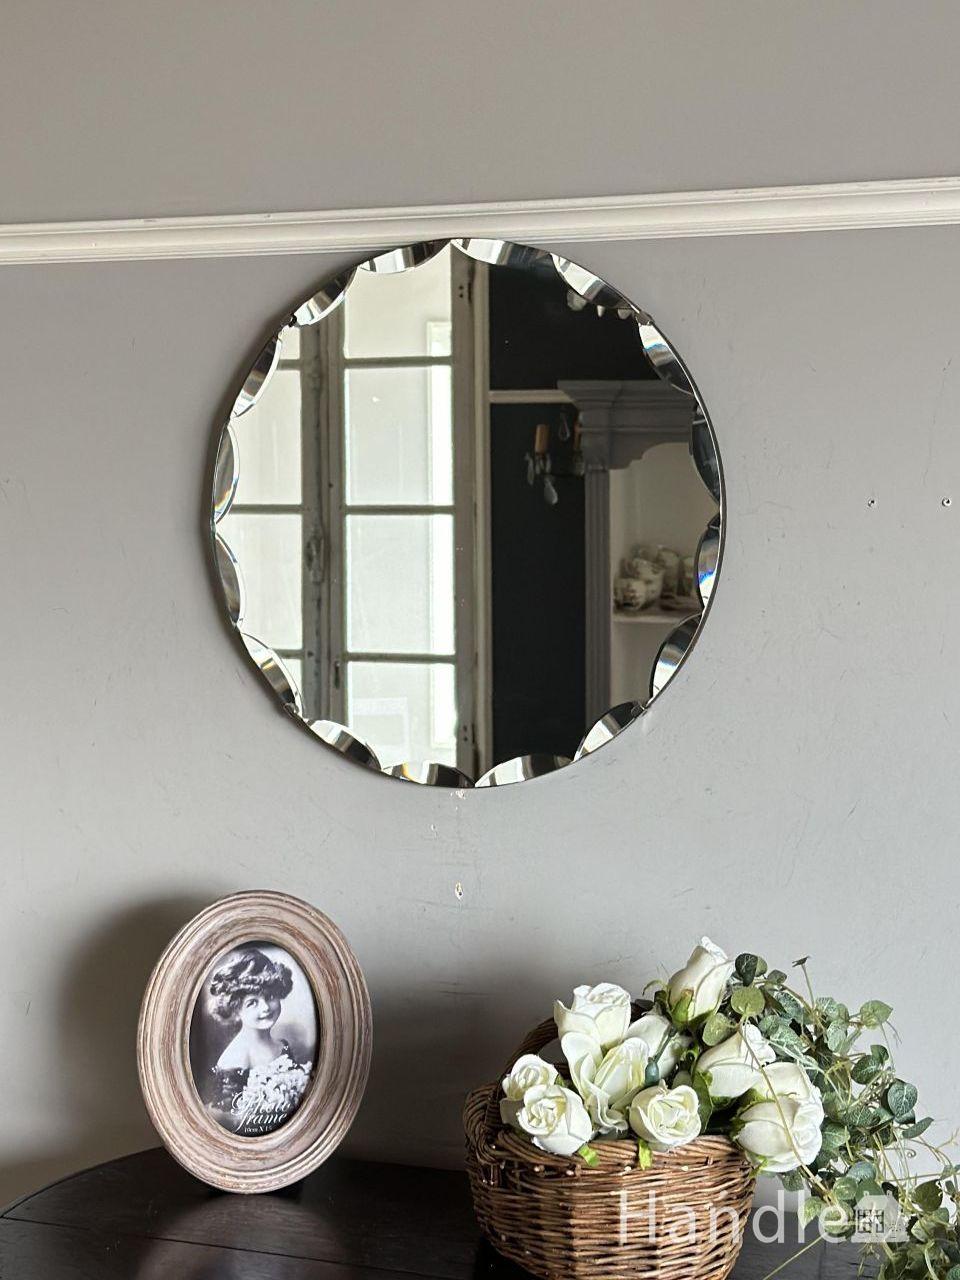 イギリスから届いたアンティークミラー、縁取りが美しい丸型の壁付けの鏡